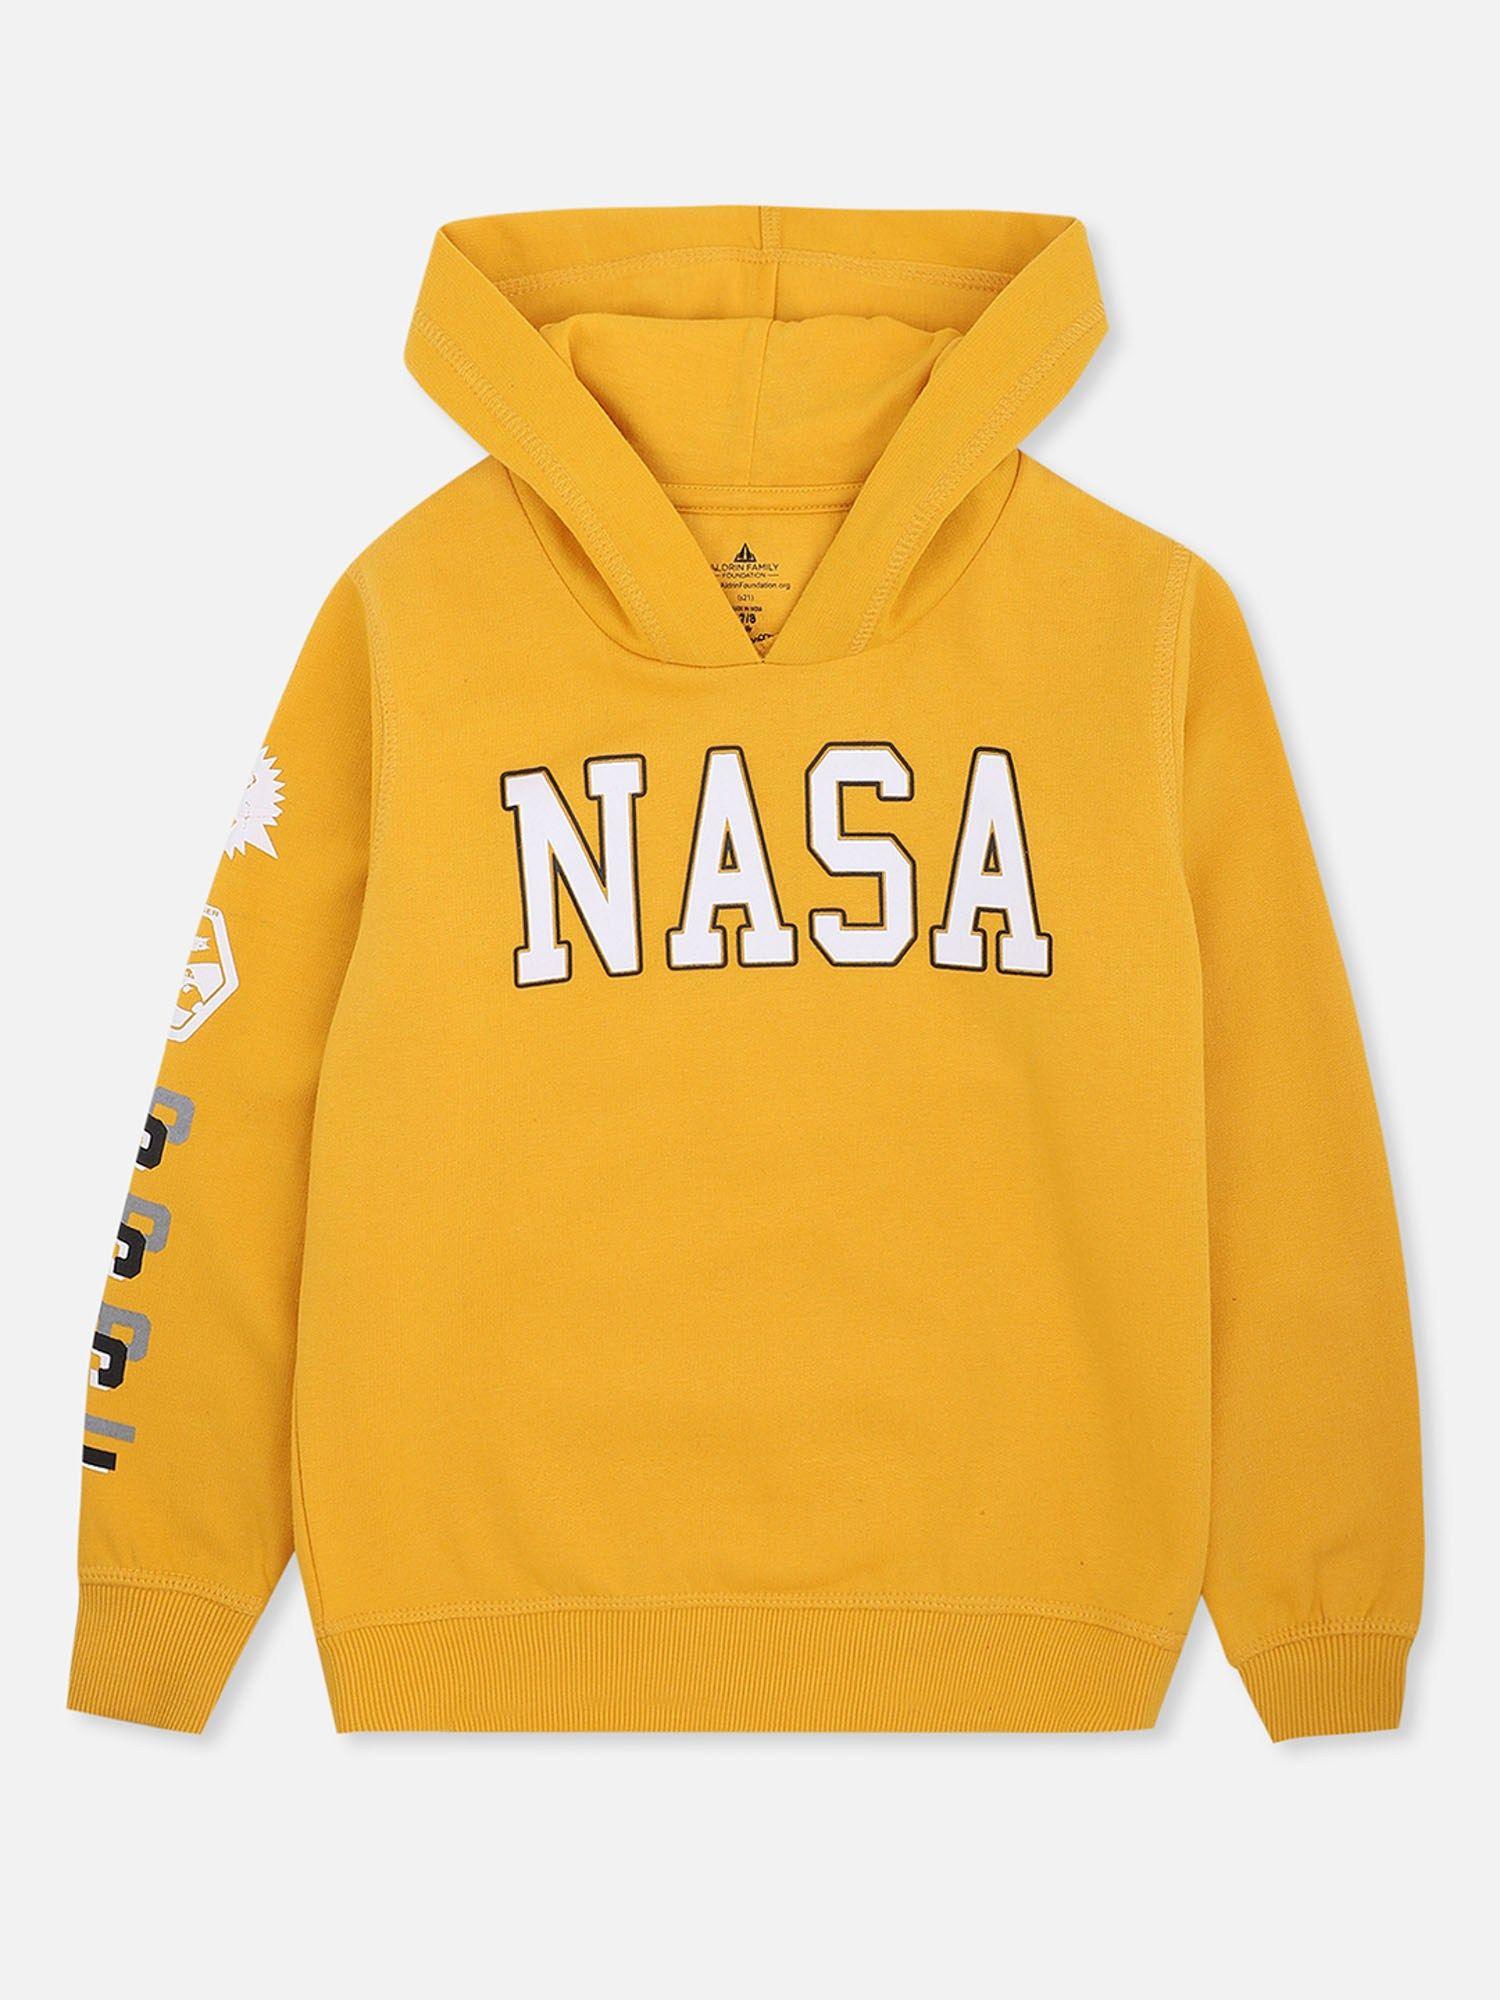 nasa printed yellow hoodie for boys